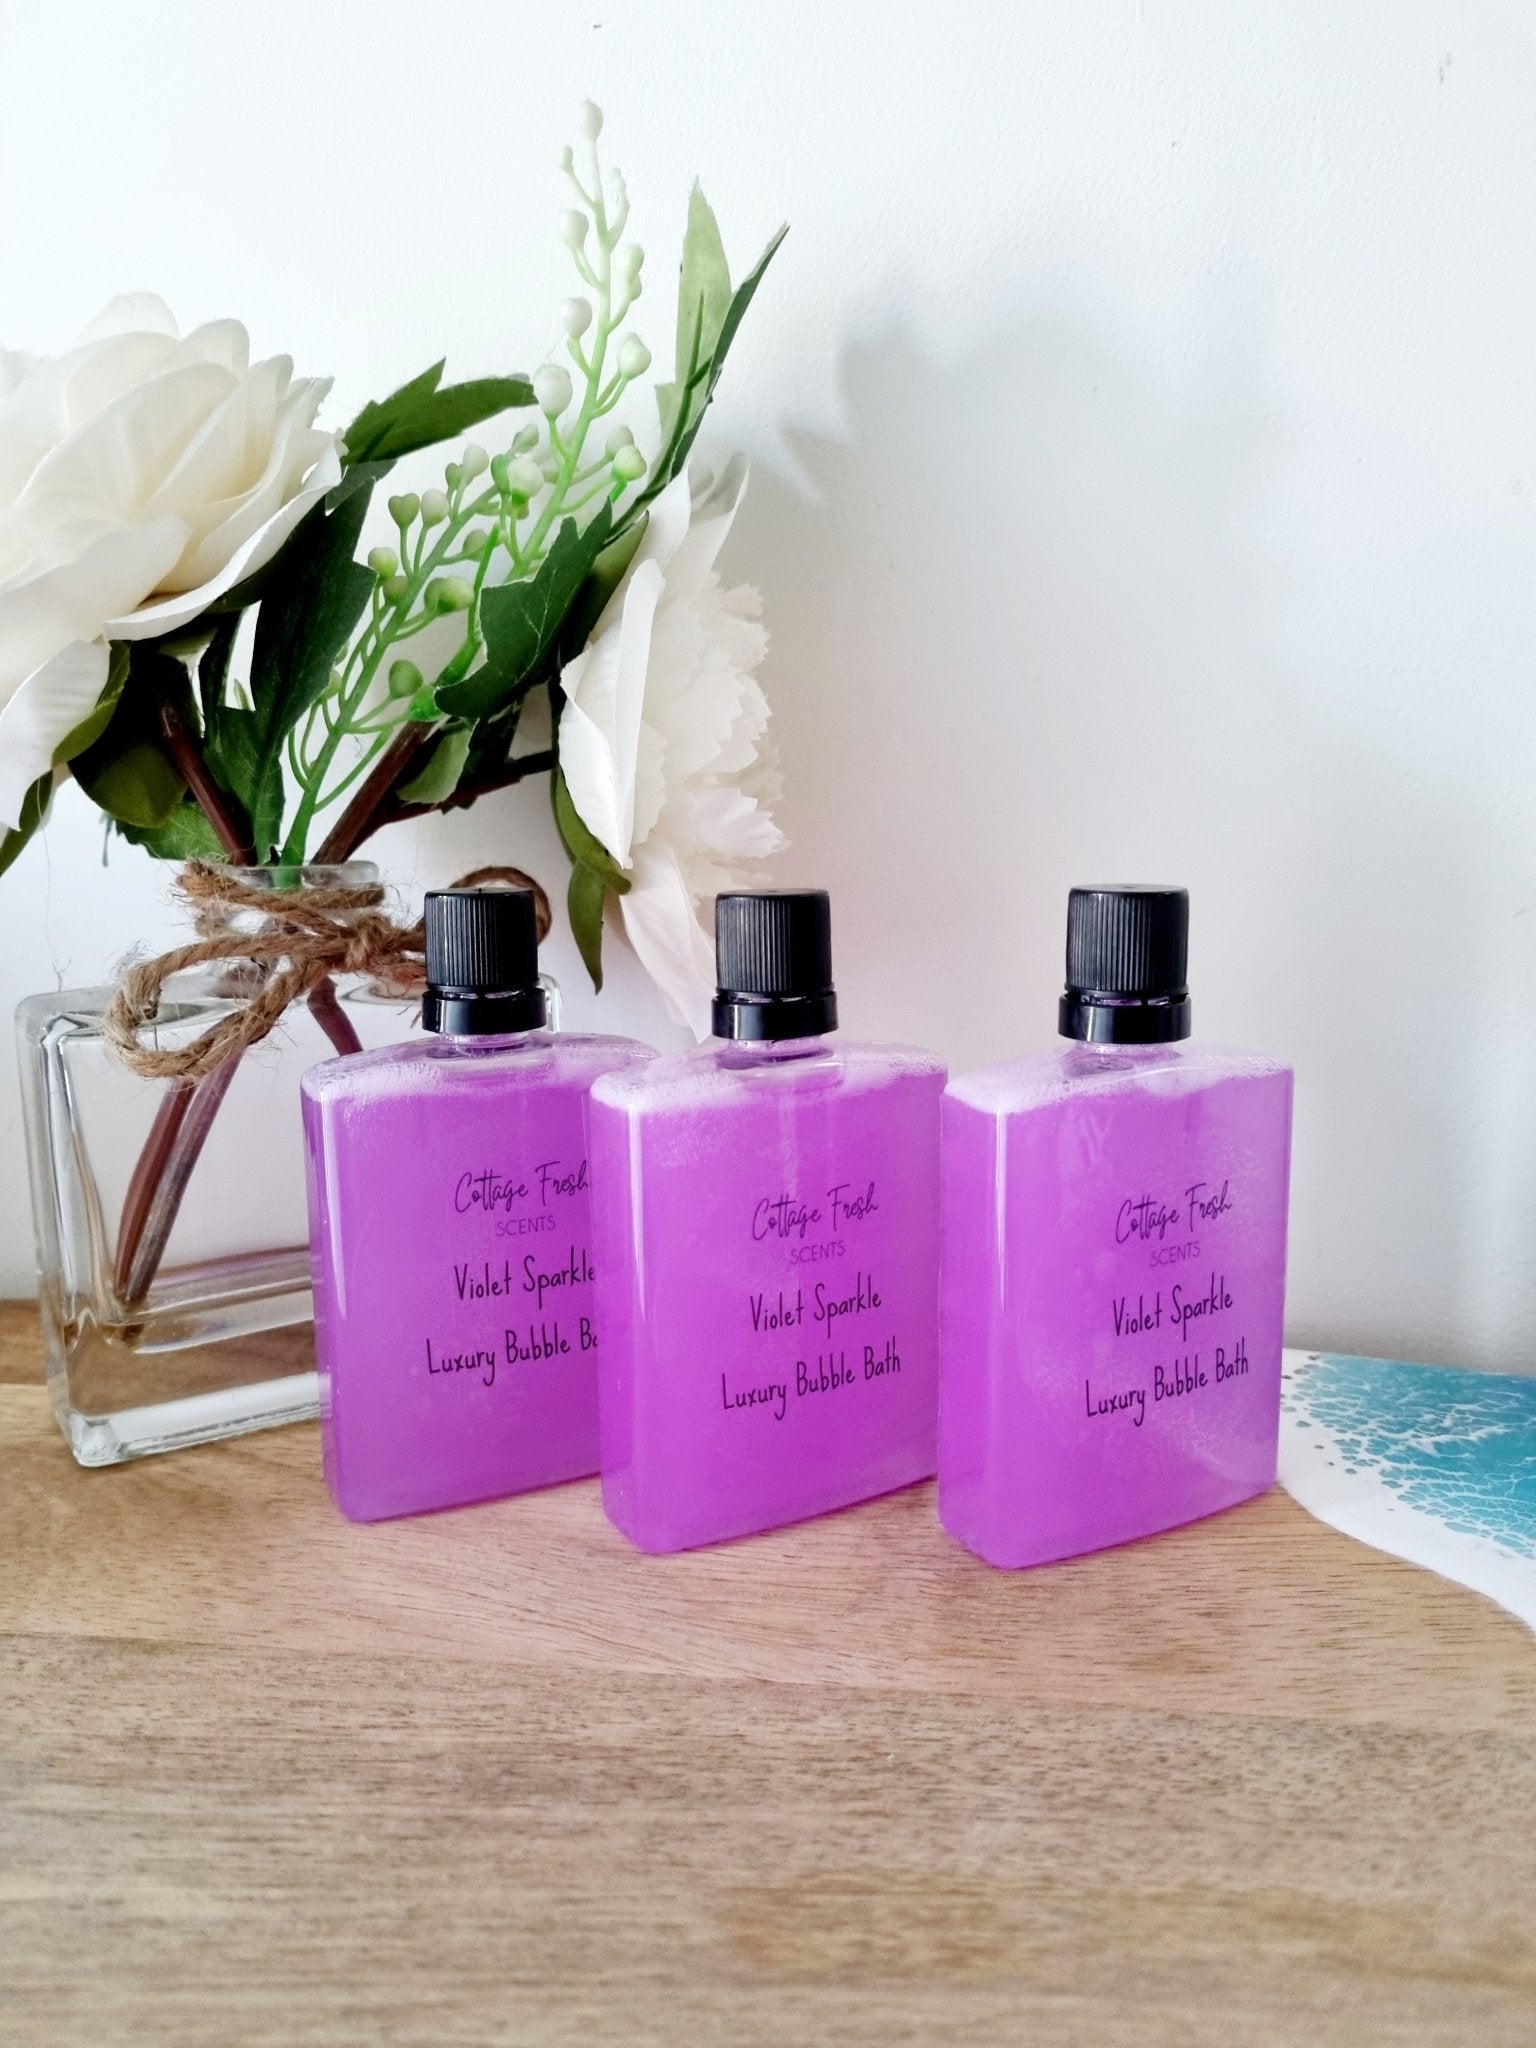 Violet Sparkle Luxury Bubble Bath - Bubble Bath - Cottage Fresh Scents